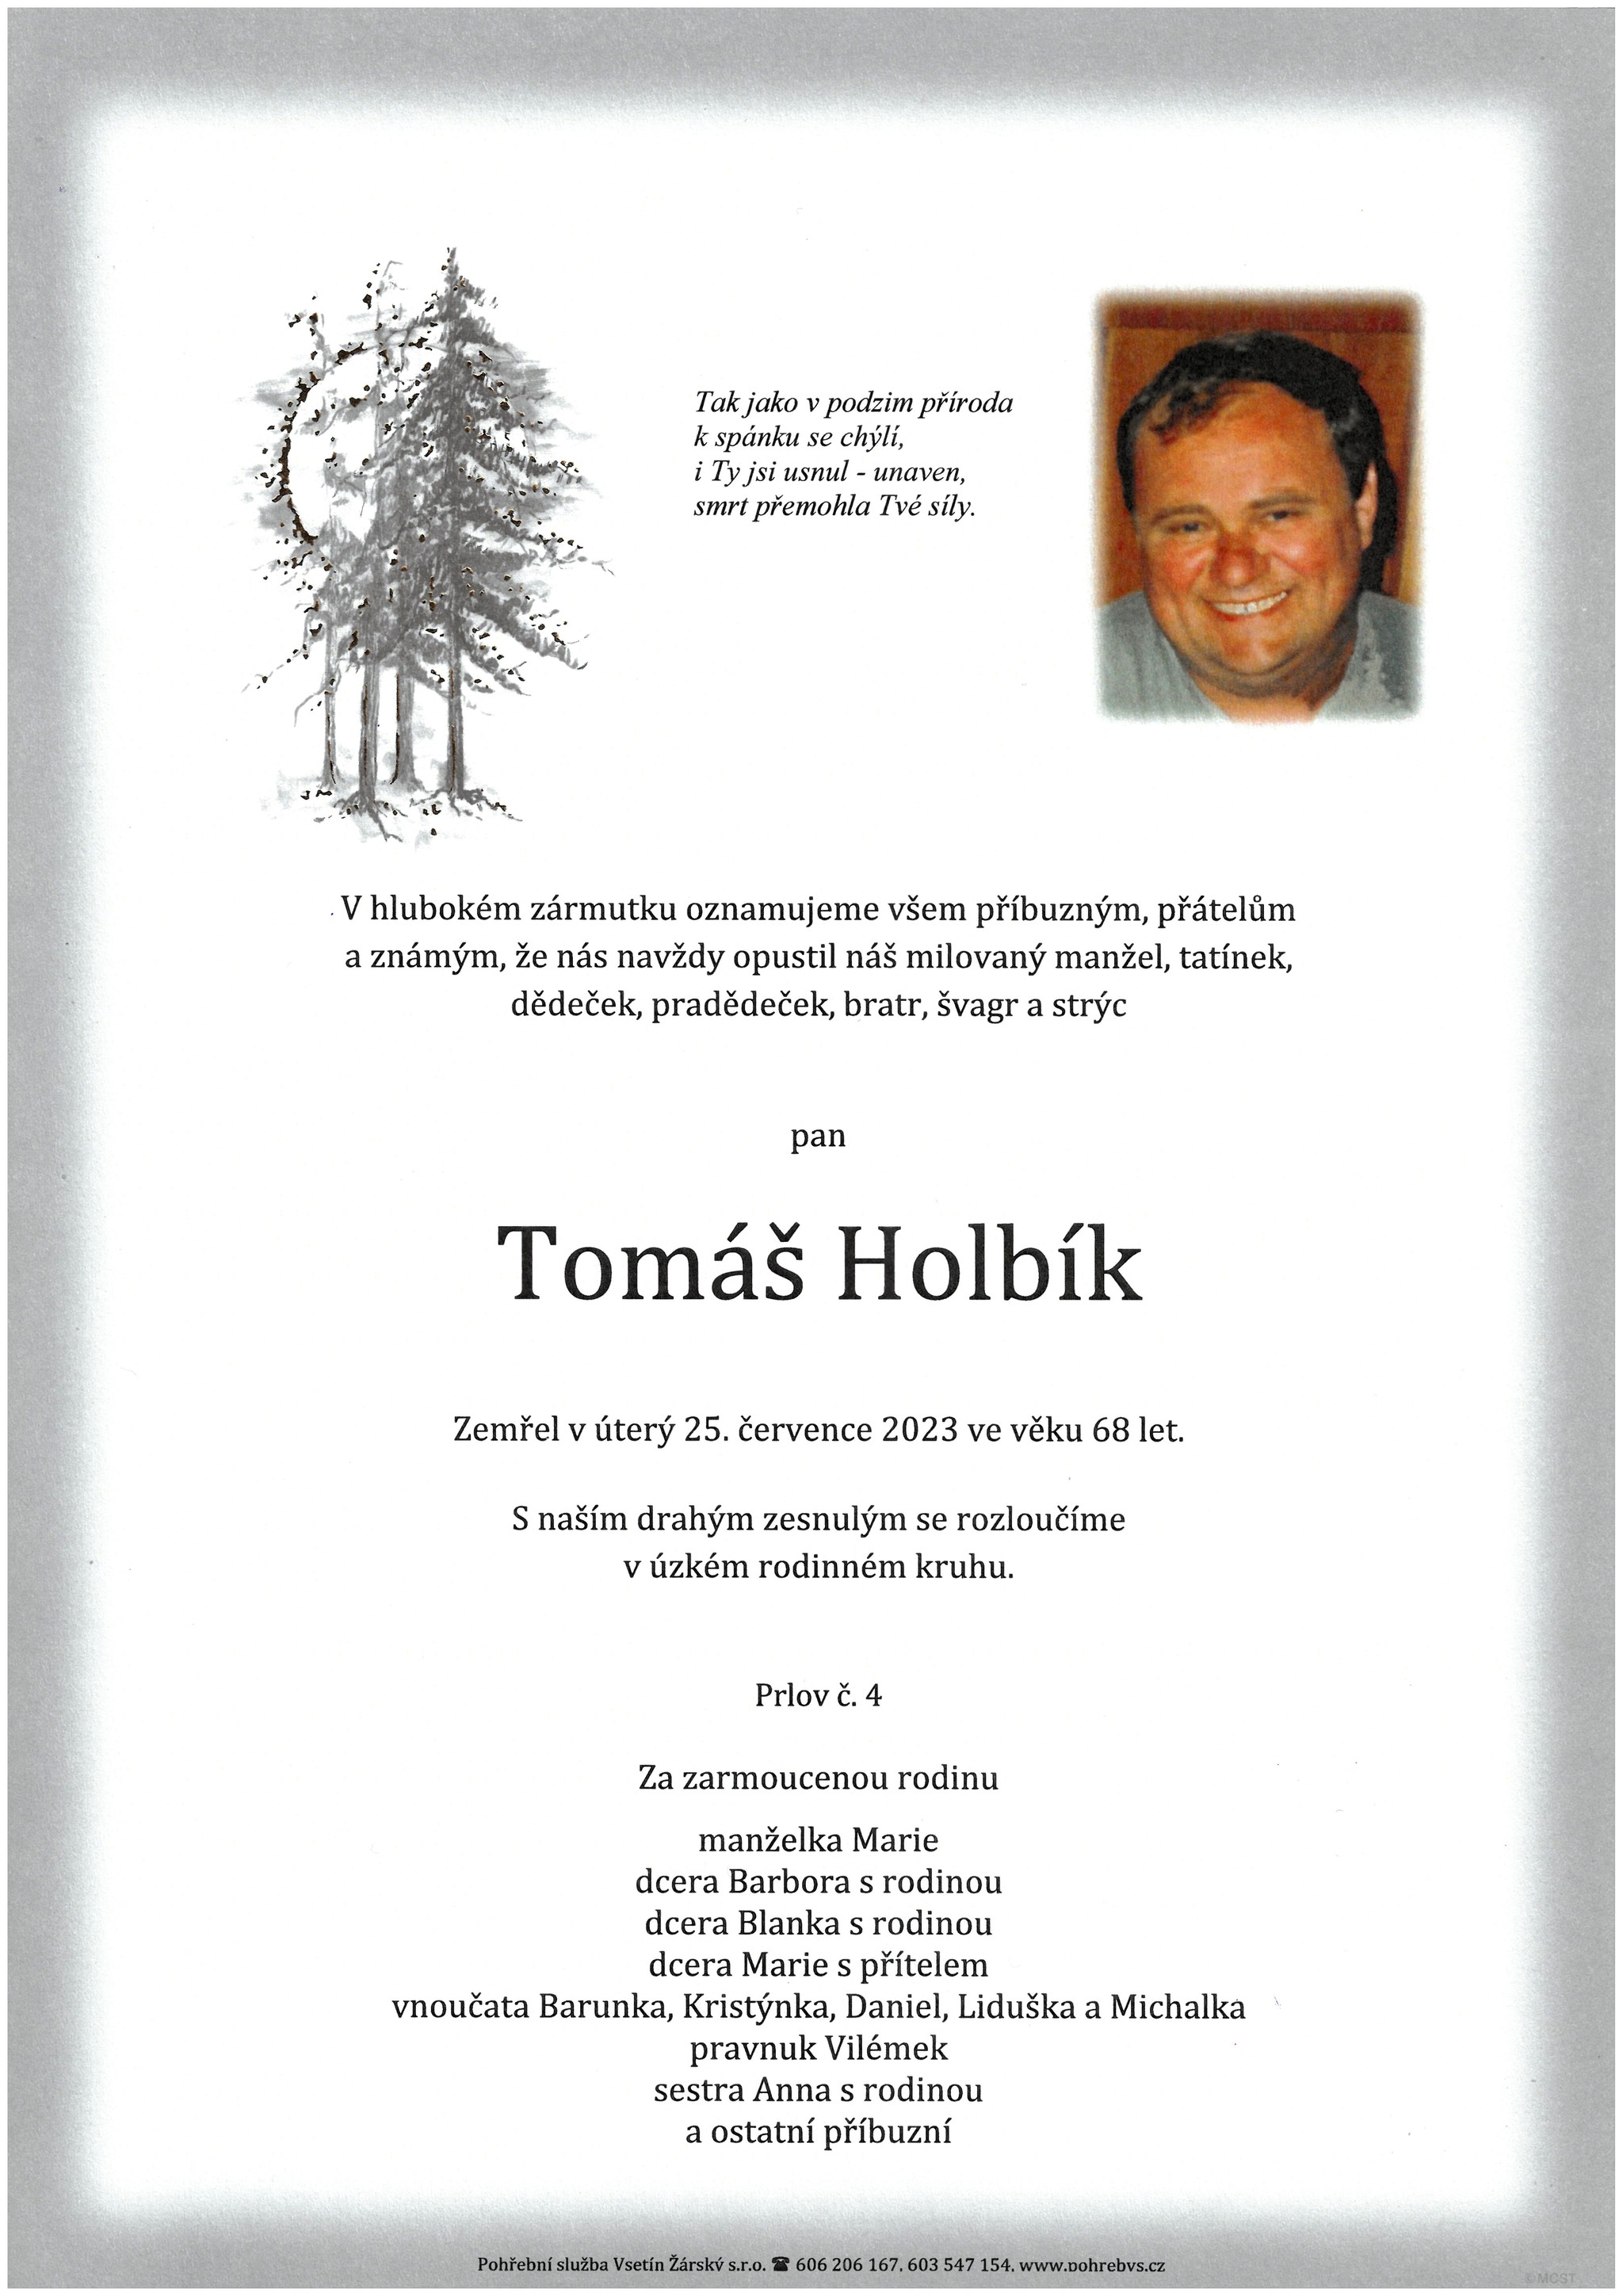 Tomáš Holbík